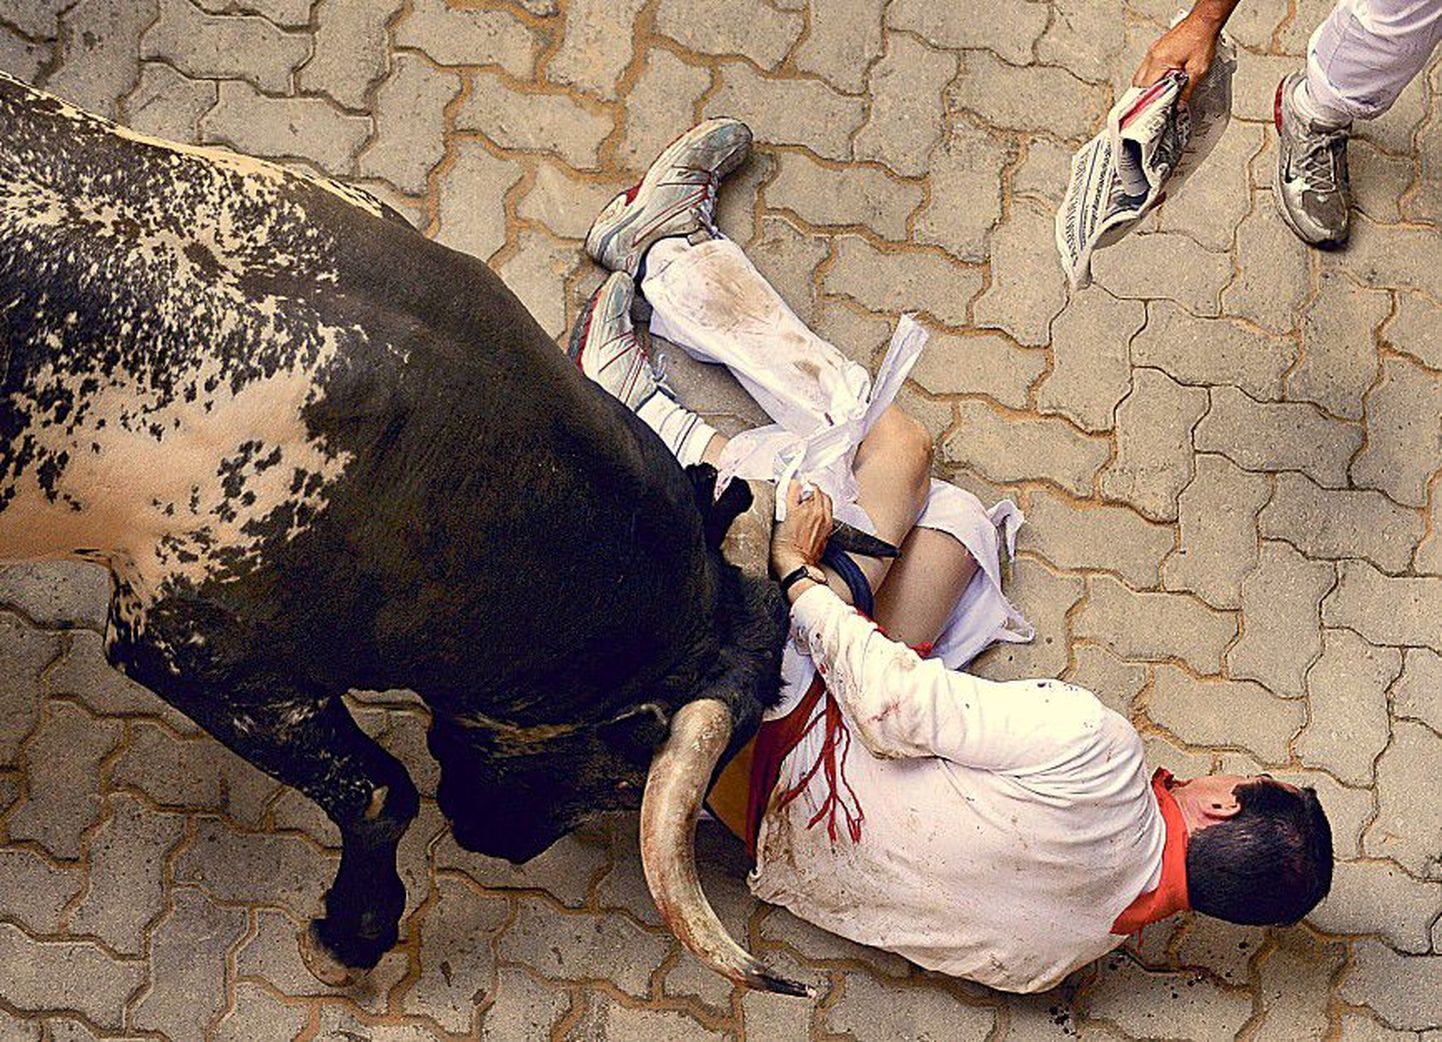 Kuulsal härjavõitlusfestivalil osalenud mees ei suutnud härga üle kavaldada ja pidi end võitluses loomaga kaotajaks tunnistama.